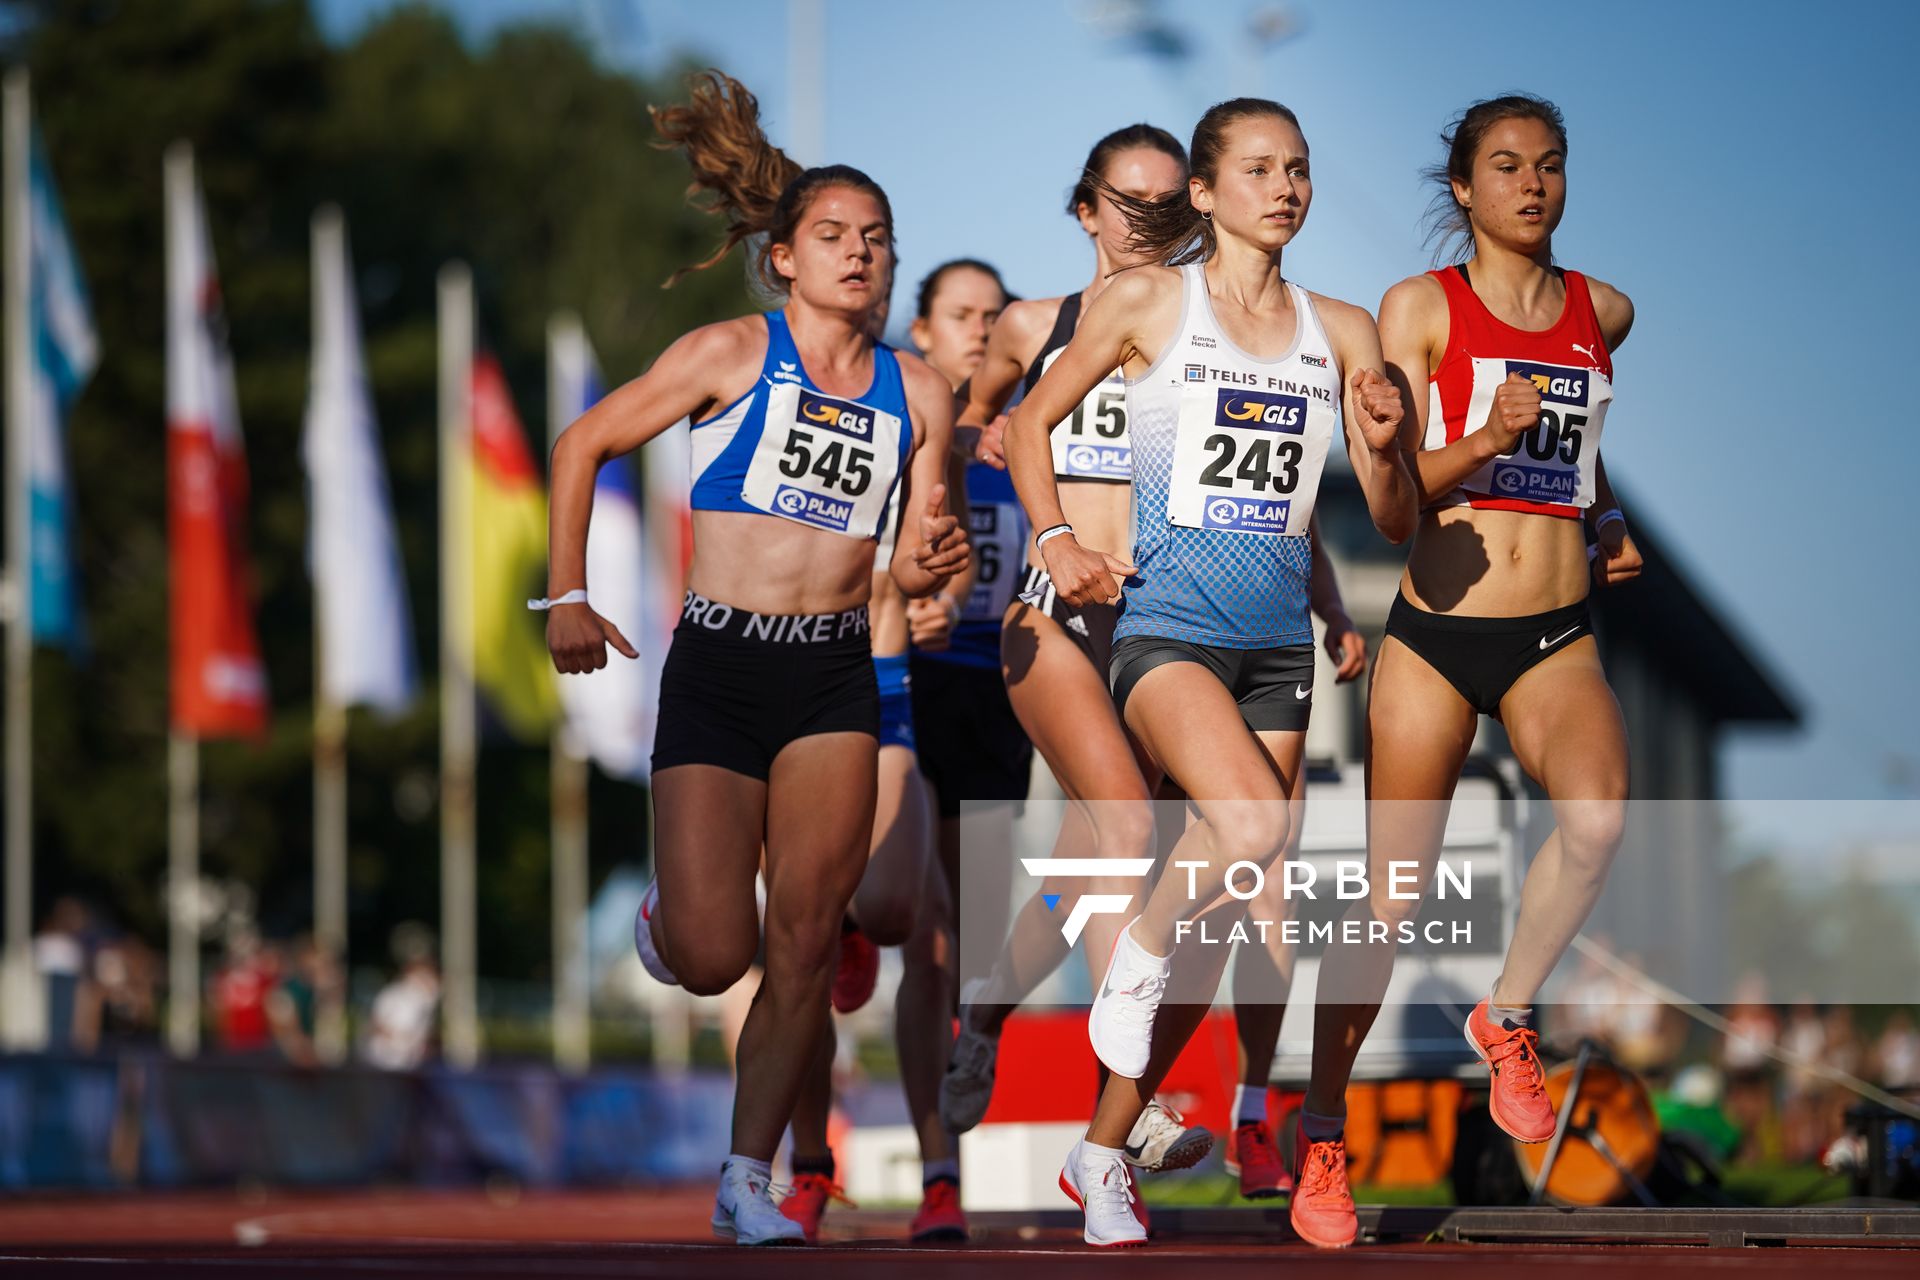 Emma Heckel (LG TELIS FINANZ Regensburg), Johanna Pulte (SG Wenden) am 30.07.2021 waehrend den deutschen Leichtathletik-Jugendmeisterschaften 2021 in Rostock